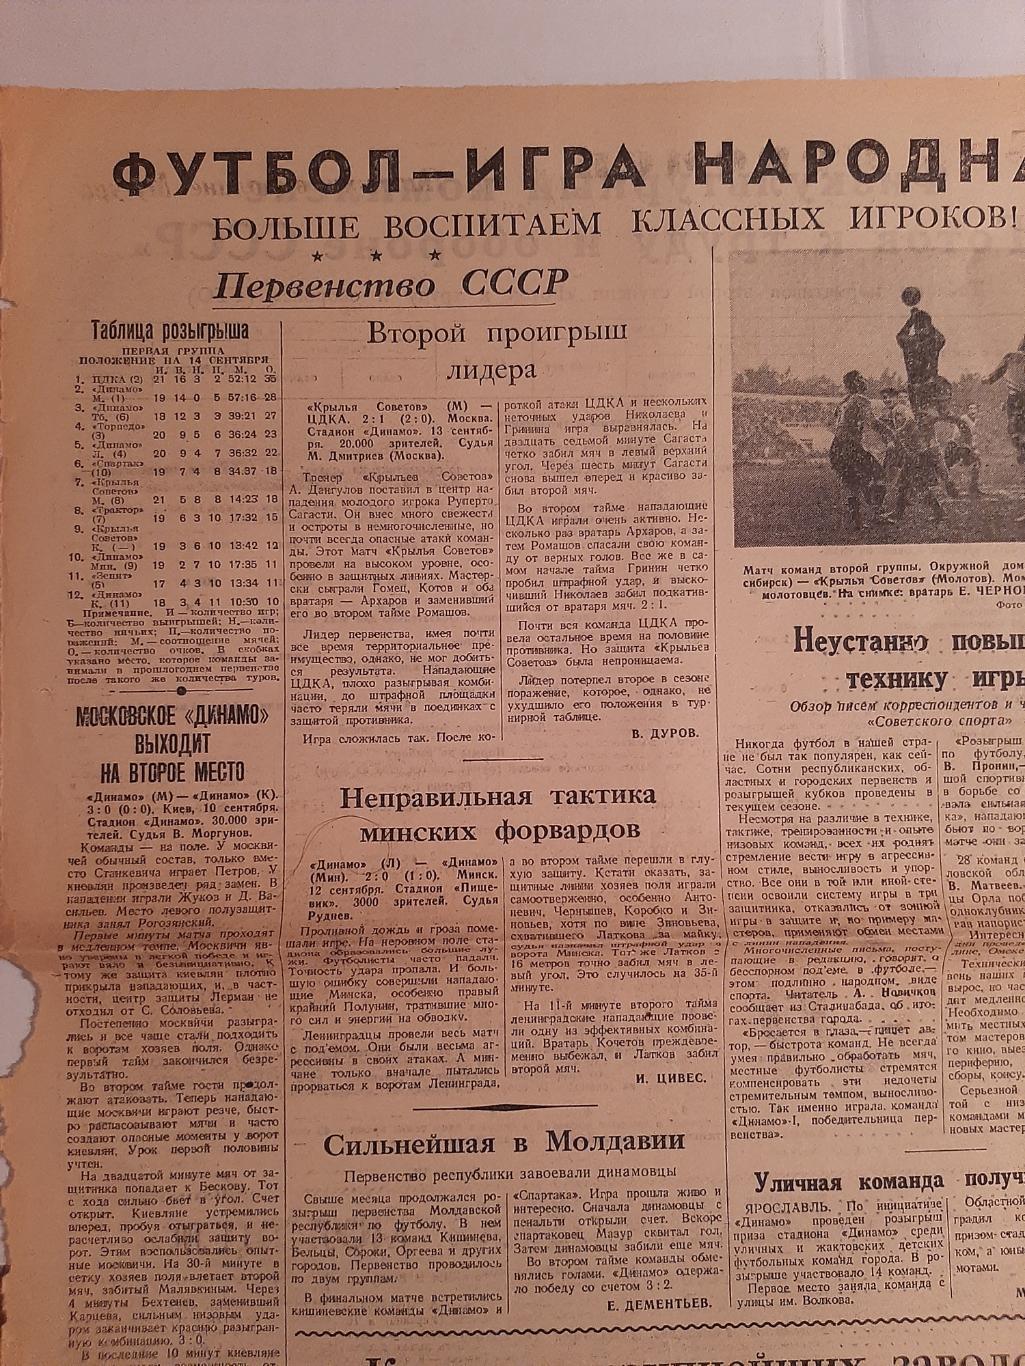 Вырезка 1946 Динамо М - Динамо К, КС М - ЦДКА, Динамо Л - Динамо Минск